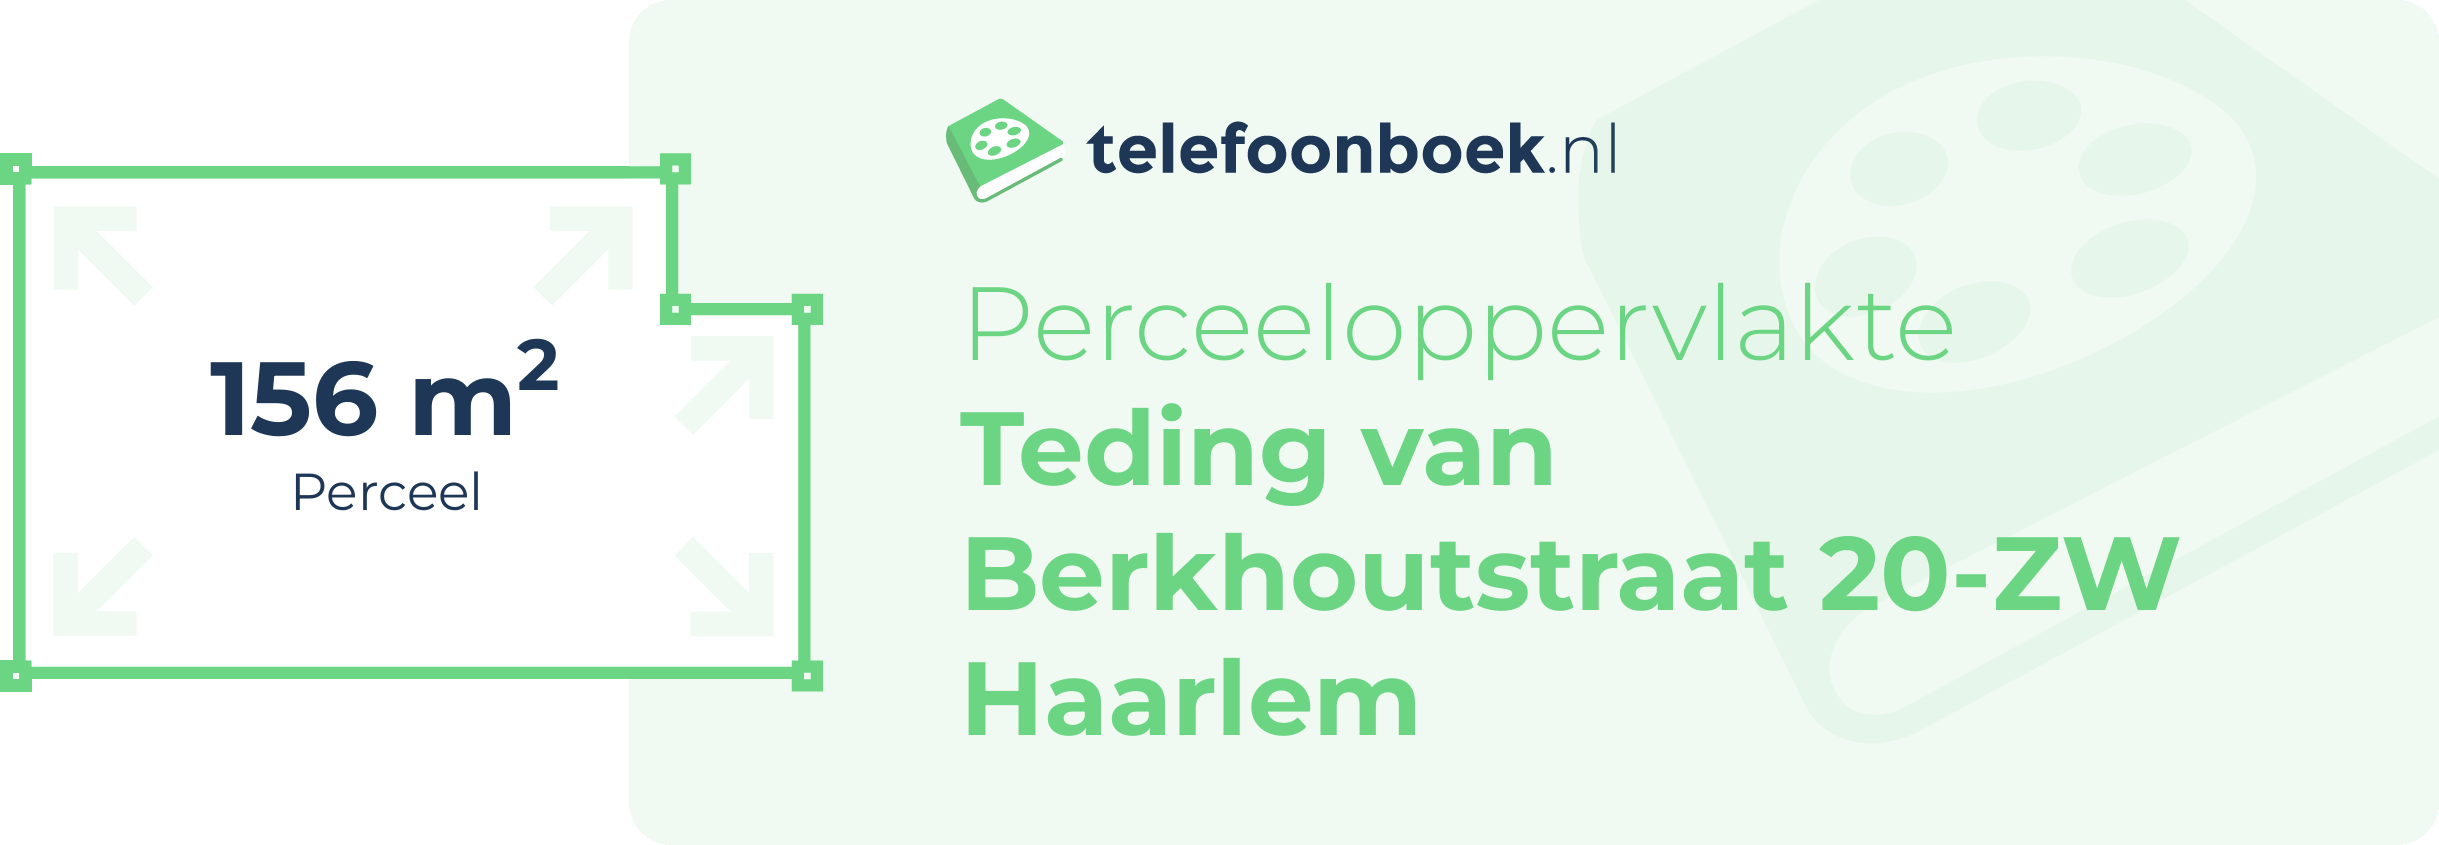 Perceeloppervlakte Teding Van Berkhoutstraat 20-ZW Haarlem